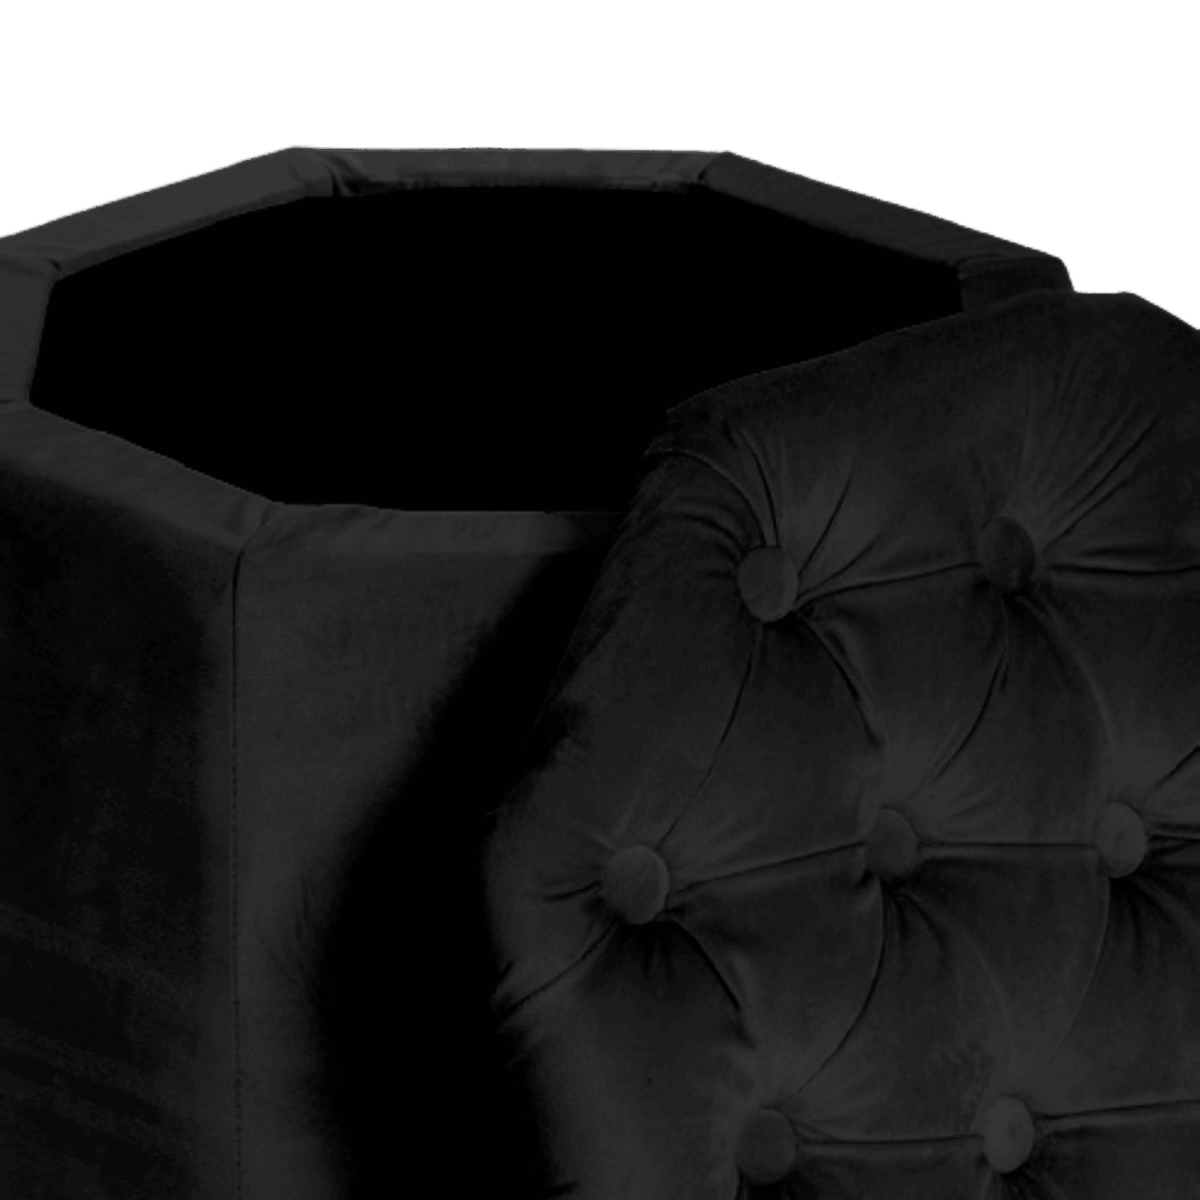 velvet-nero-pouf-ottagonale-contenitore-velluto-dettaglio-aperto